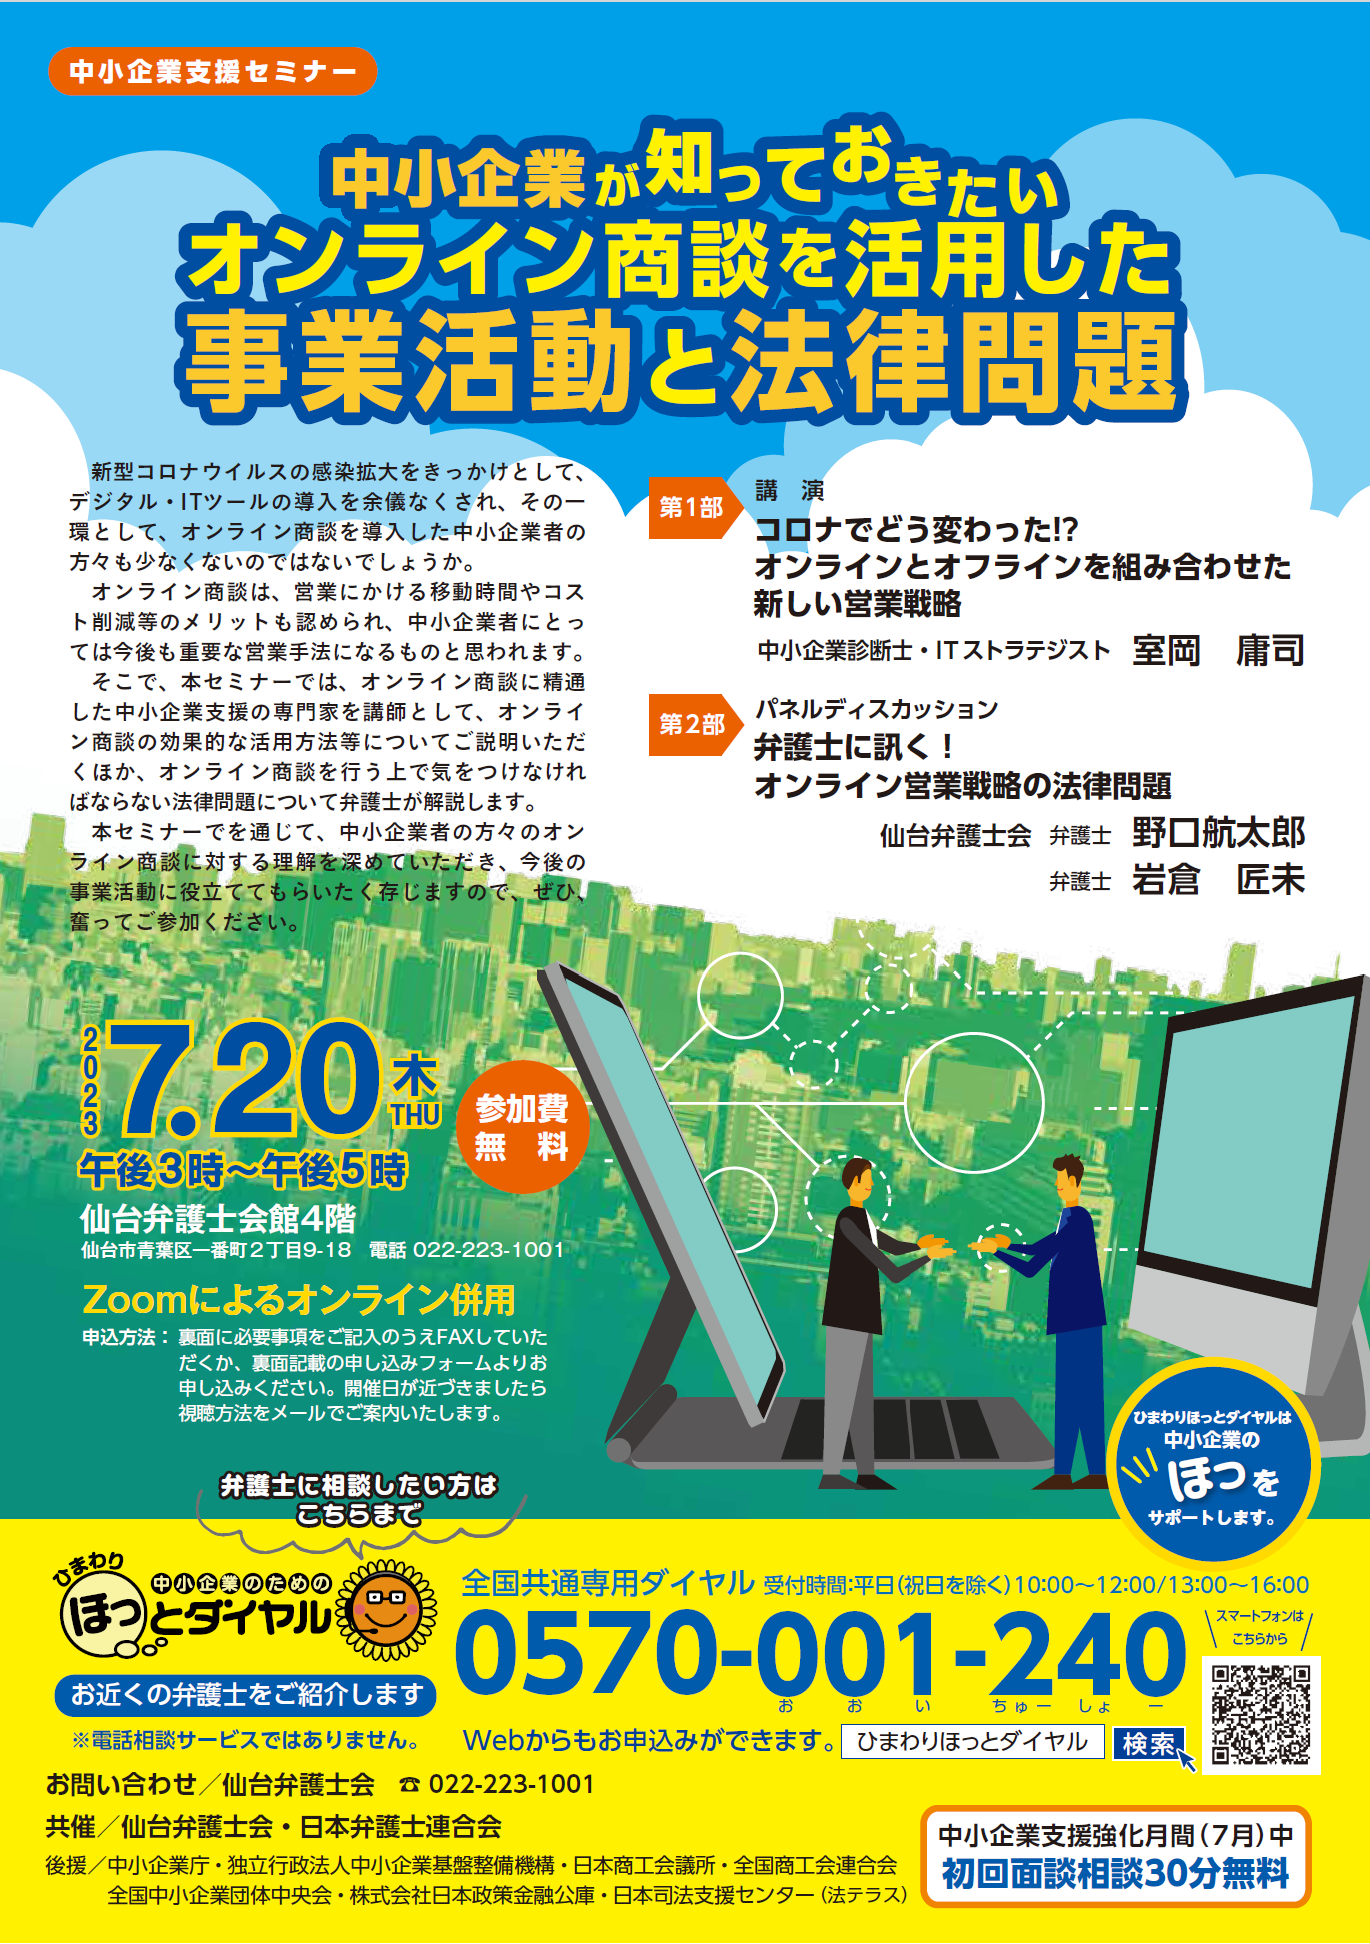 「仙台弁護士会 中小企業支援セミナー」オンラインとオフラインを組み合わせた新しい営業戦略セミナー